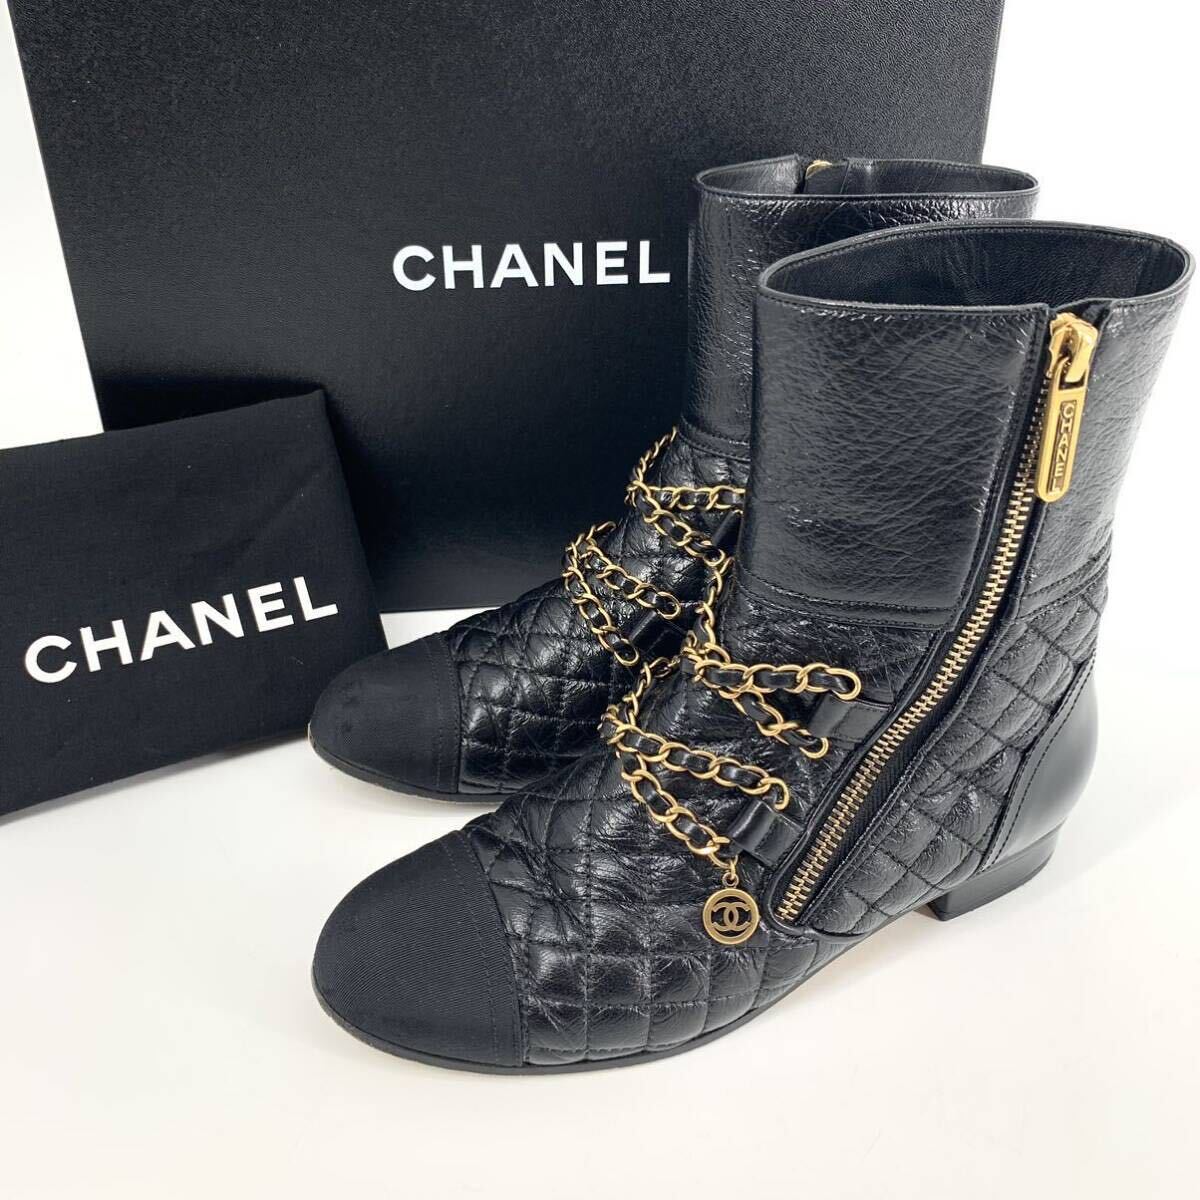  прекрасный товар Chanel CHANEL ботинки короткие сапоги обувь 2018 производства кожа черный здесь Mark цепь matelasse AG 34024 Италия производства 36